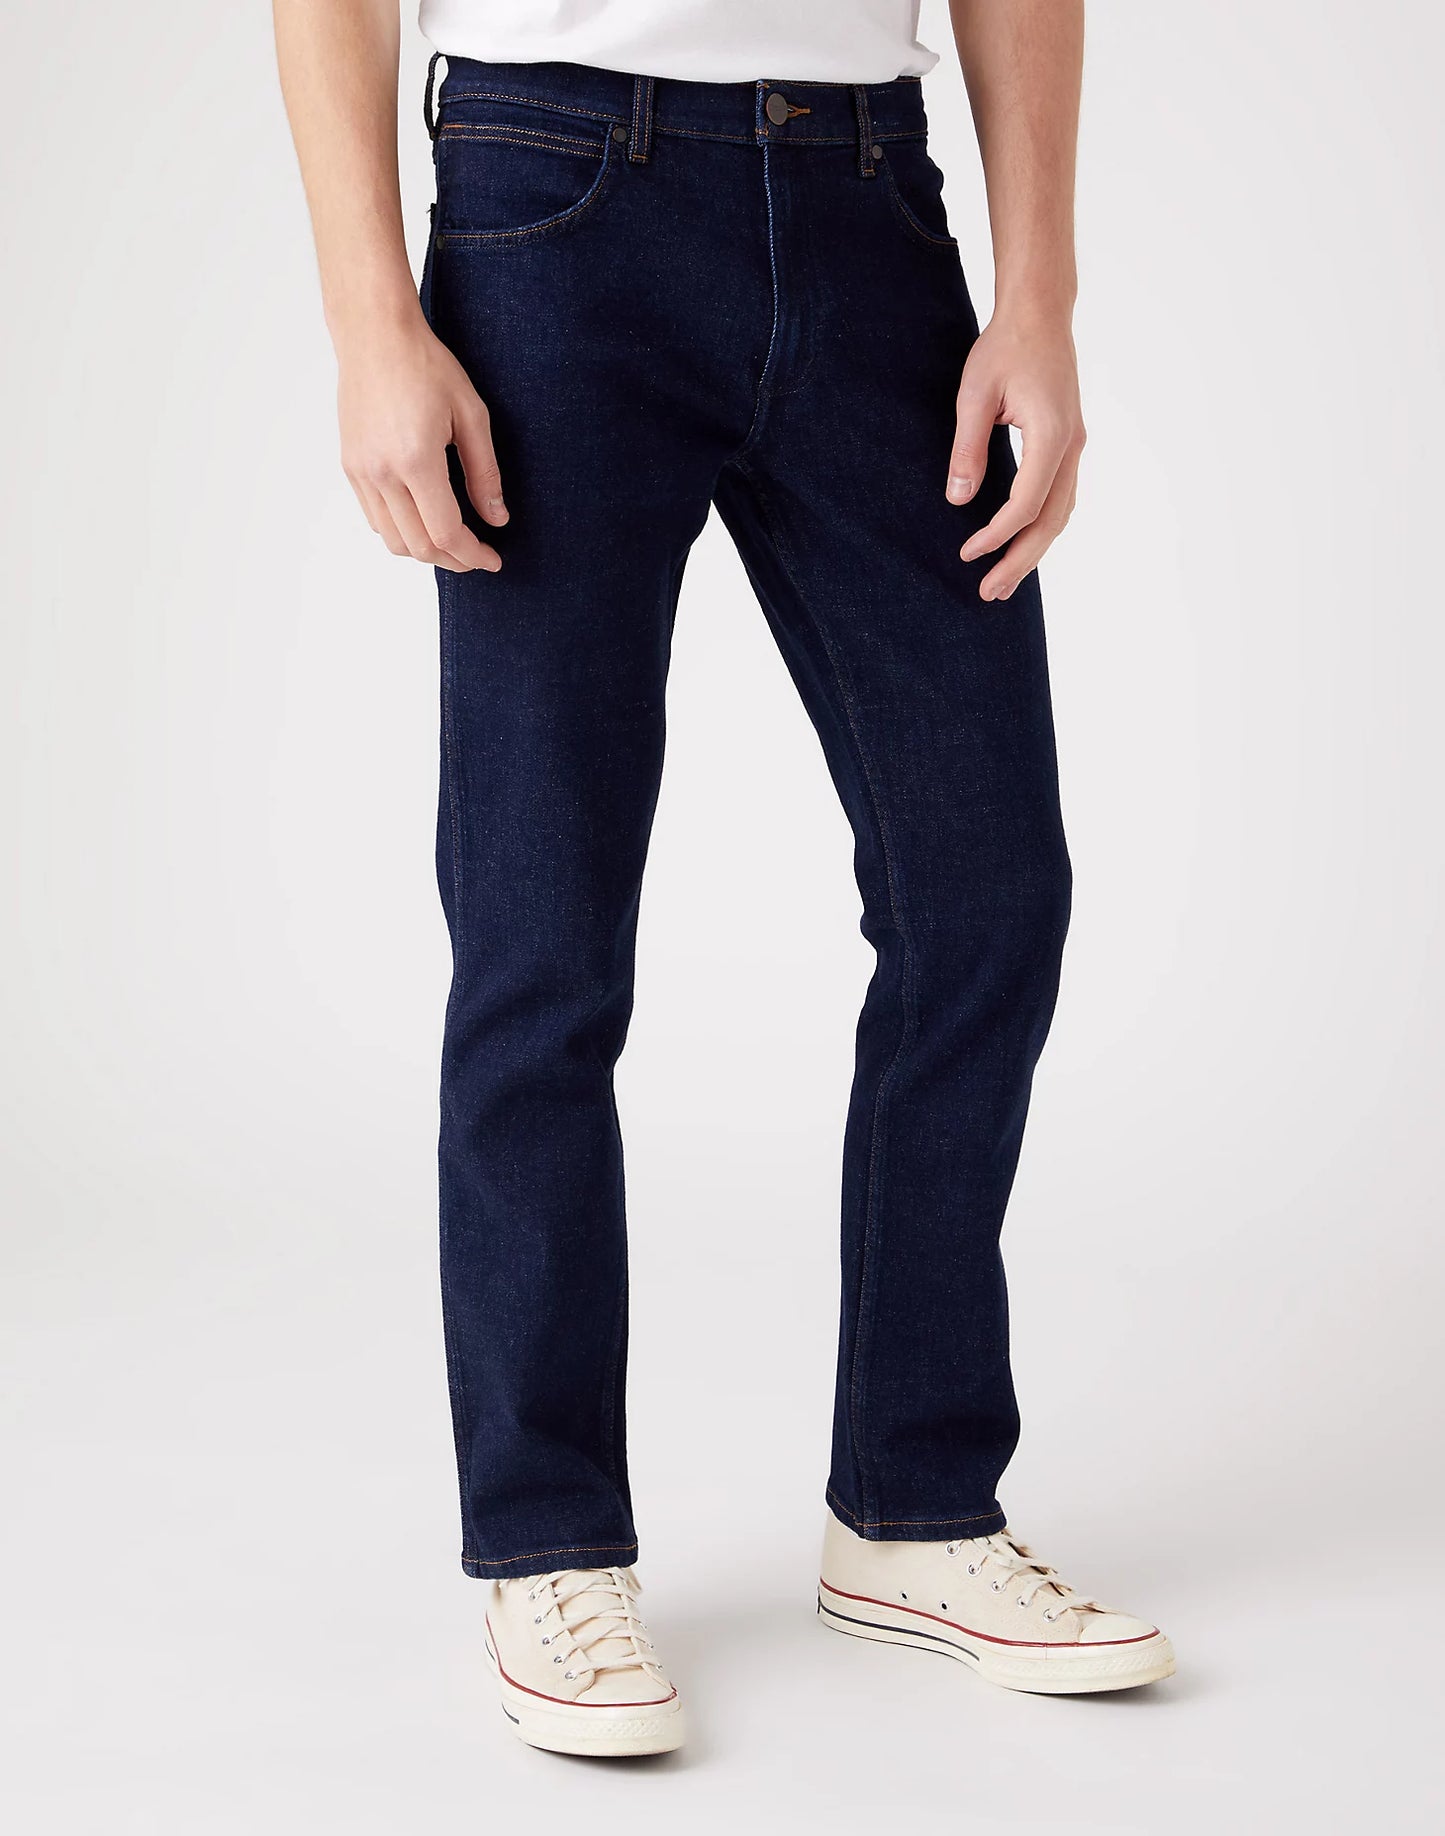 Wrangler Greensboro Day Drifter Jeans